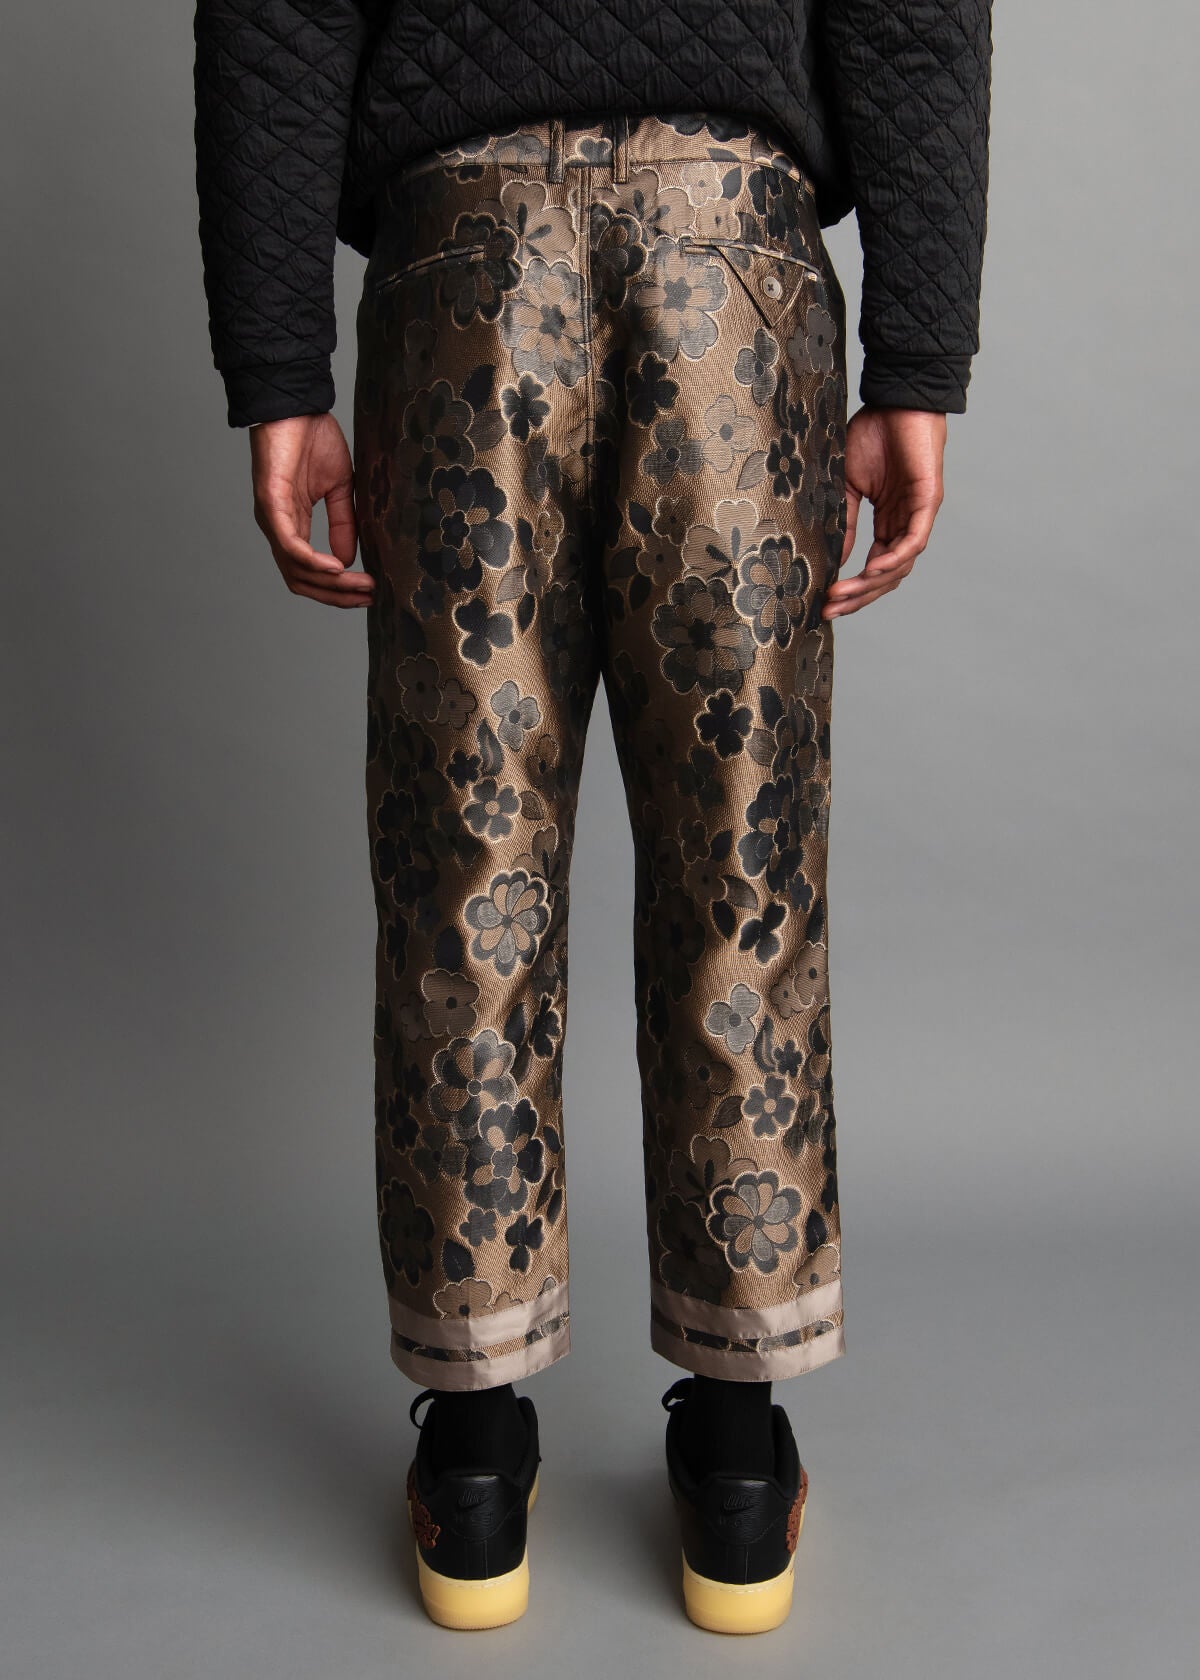 flower pattern bronze brocade men's pants